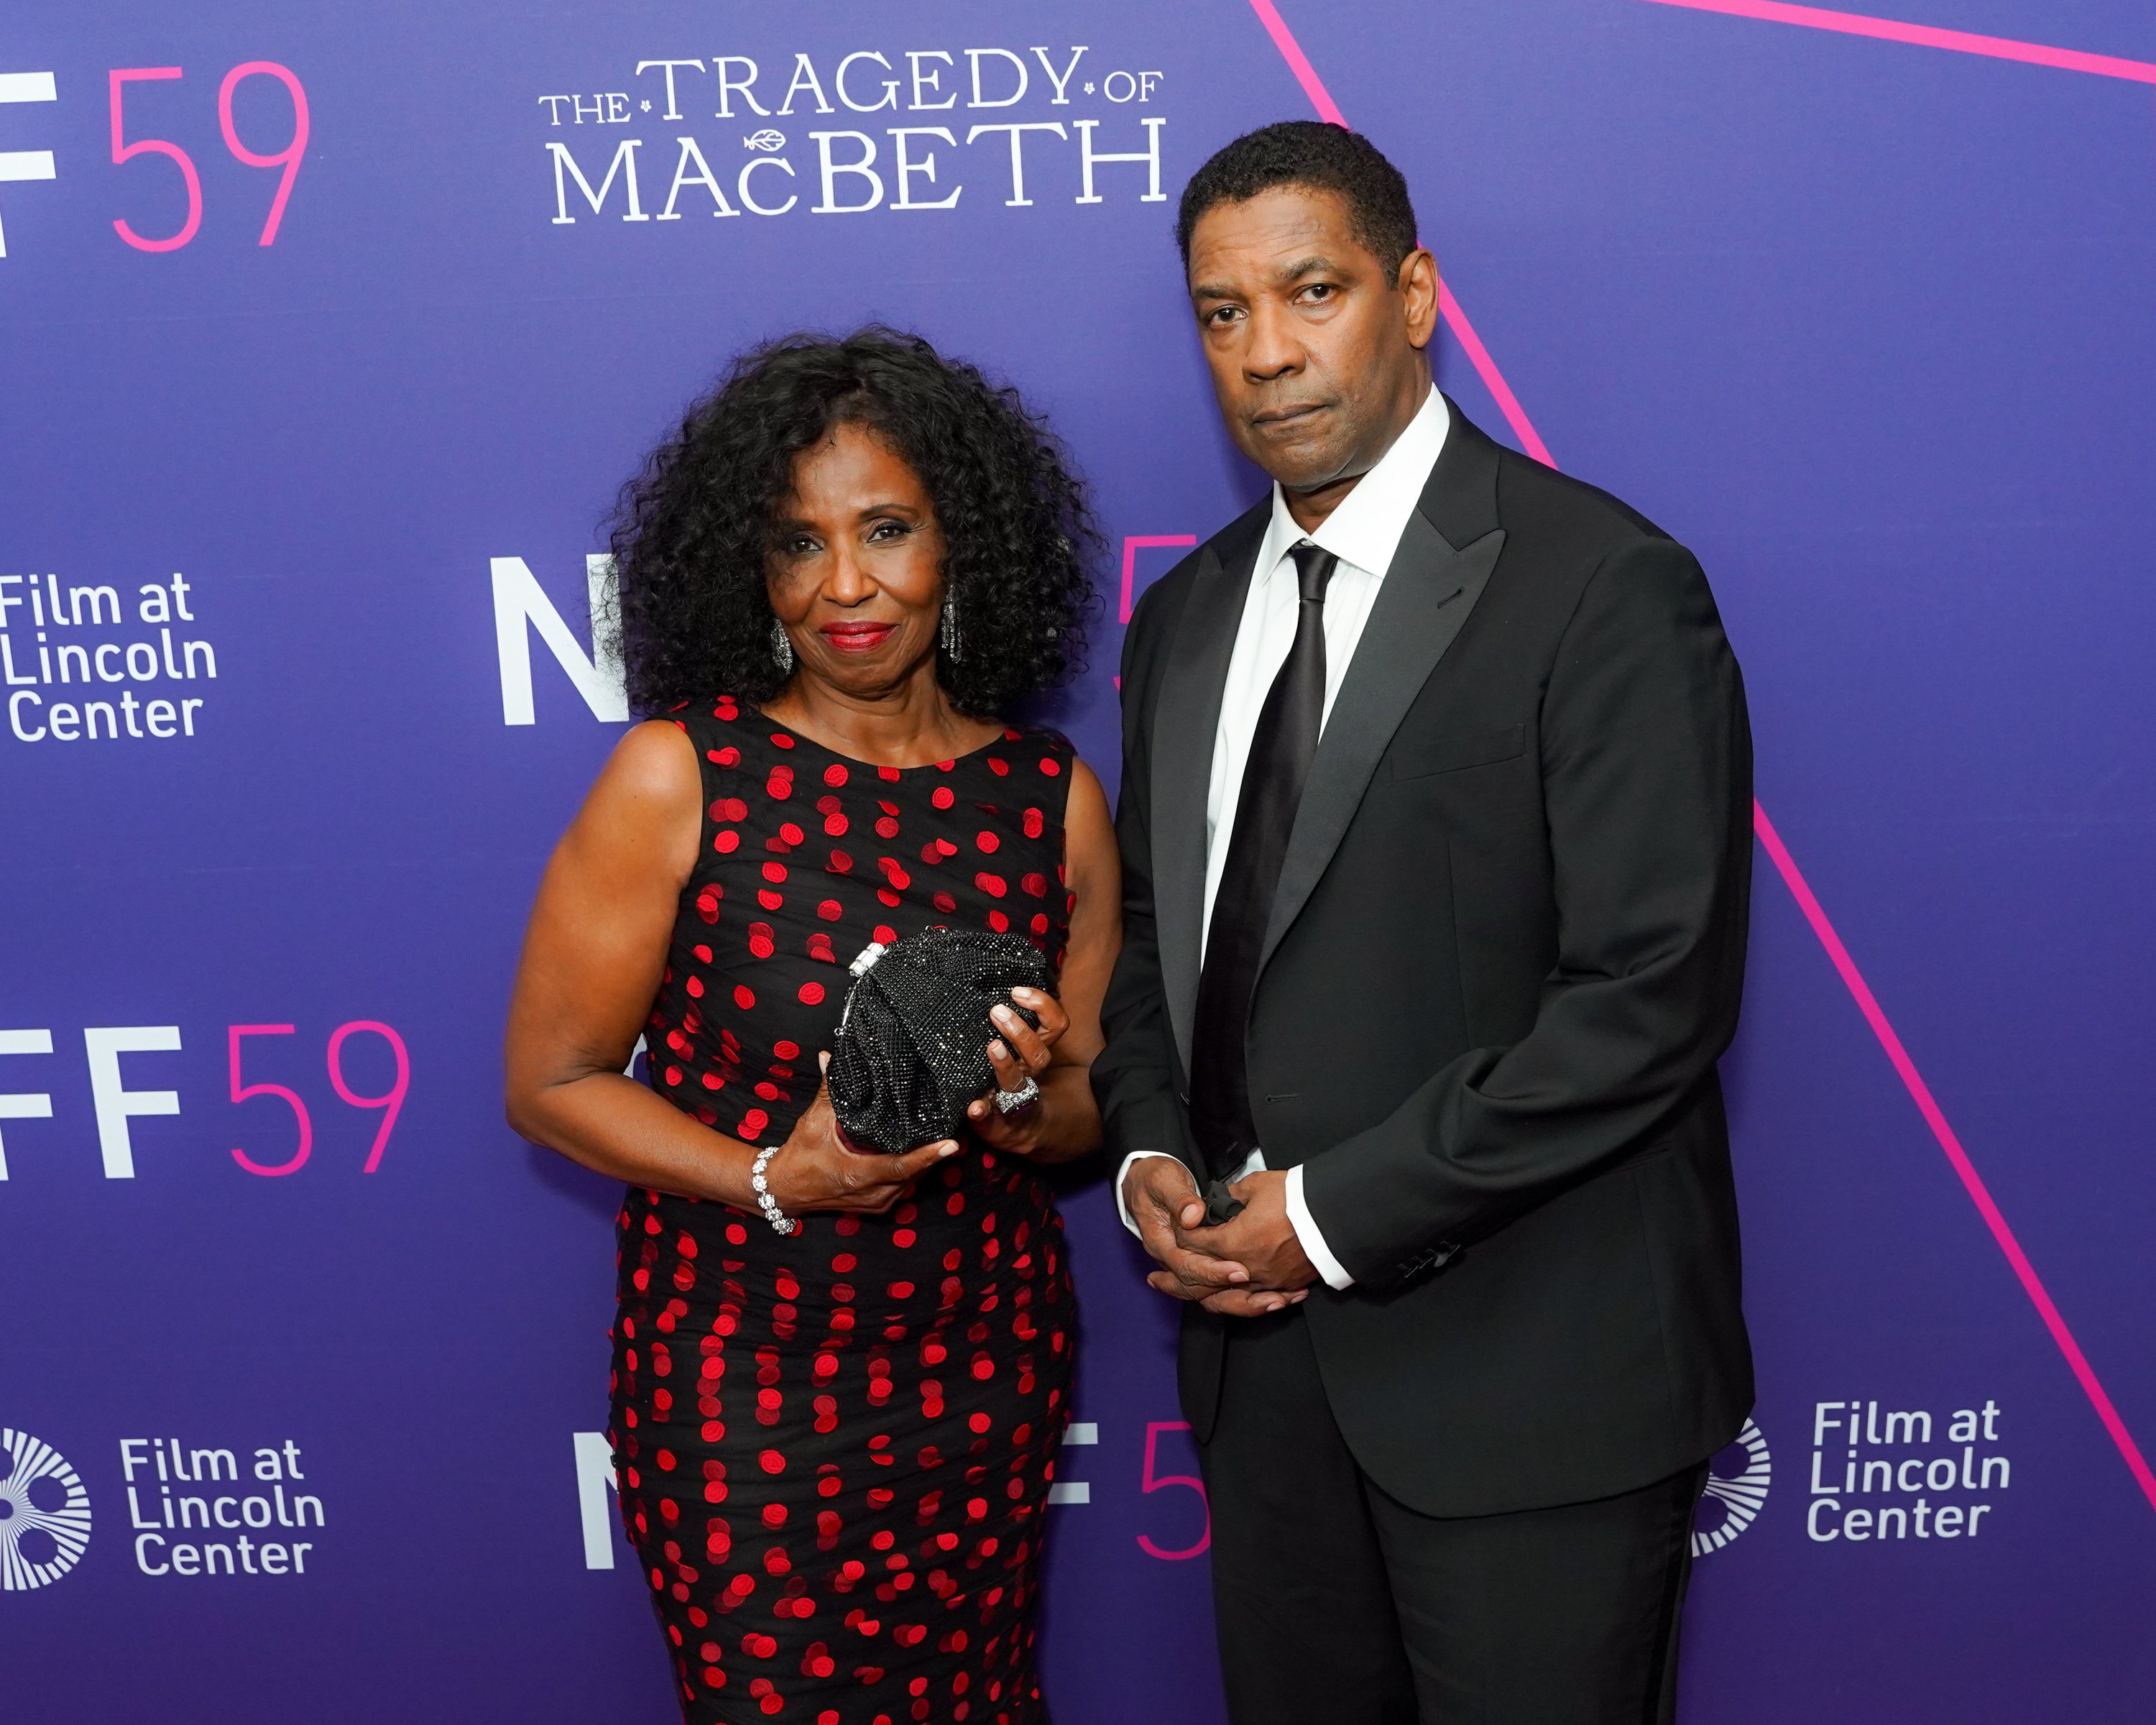 Pauletta y Denzel Washington asisten a la noche de apertura del 59º Festival de Cine de Nueva York - La tragedia de Macbeth en Alice Tully Hall, Lincoln Center el 24 de septiembre de 2021, en la ciudad de Nueva York. | Foto: Getty Images